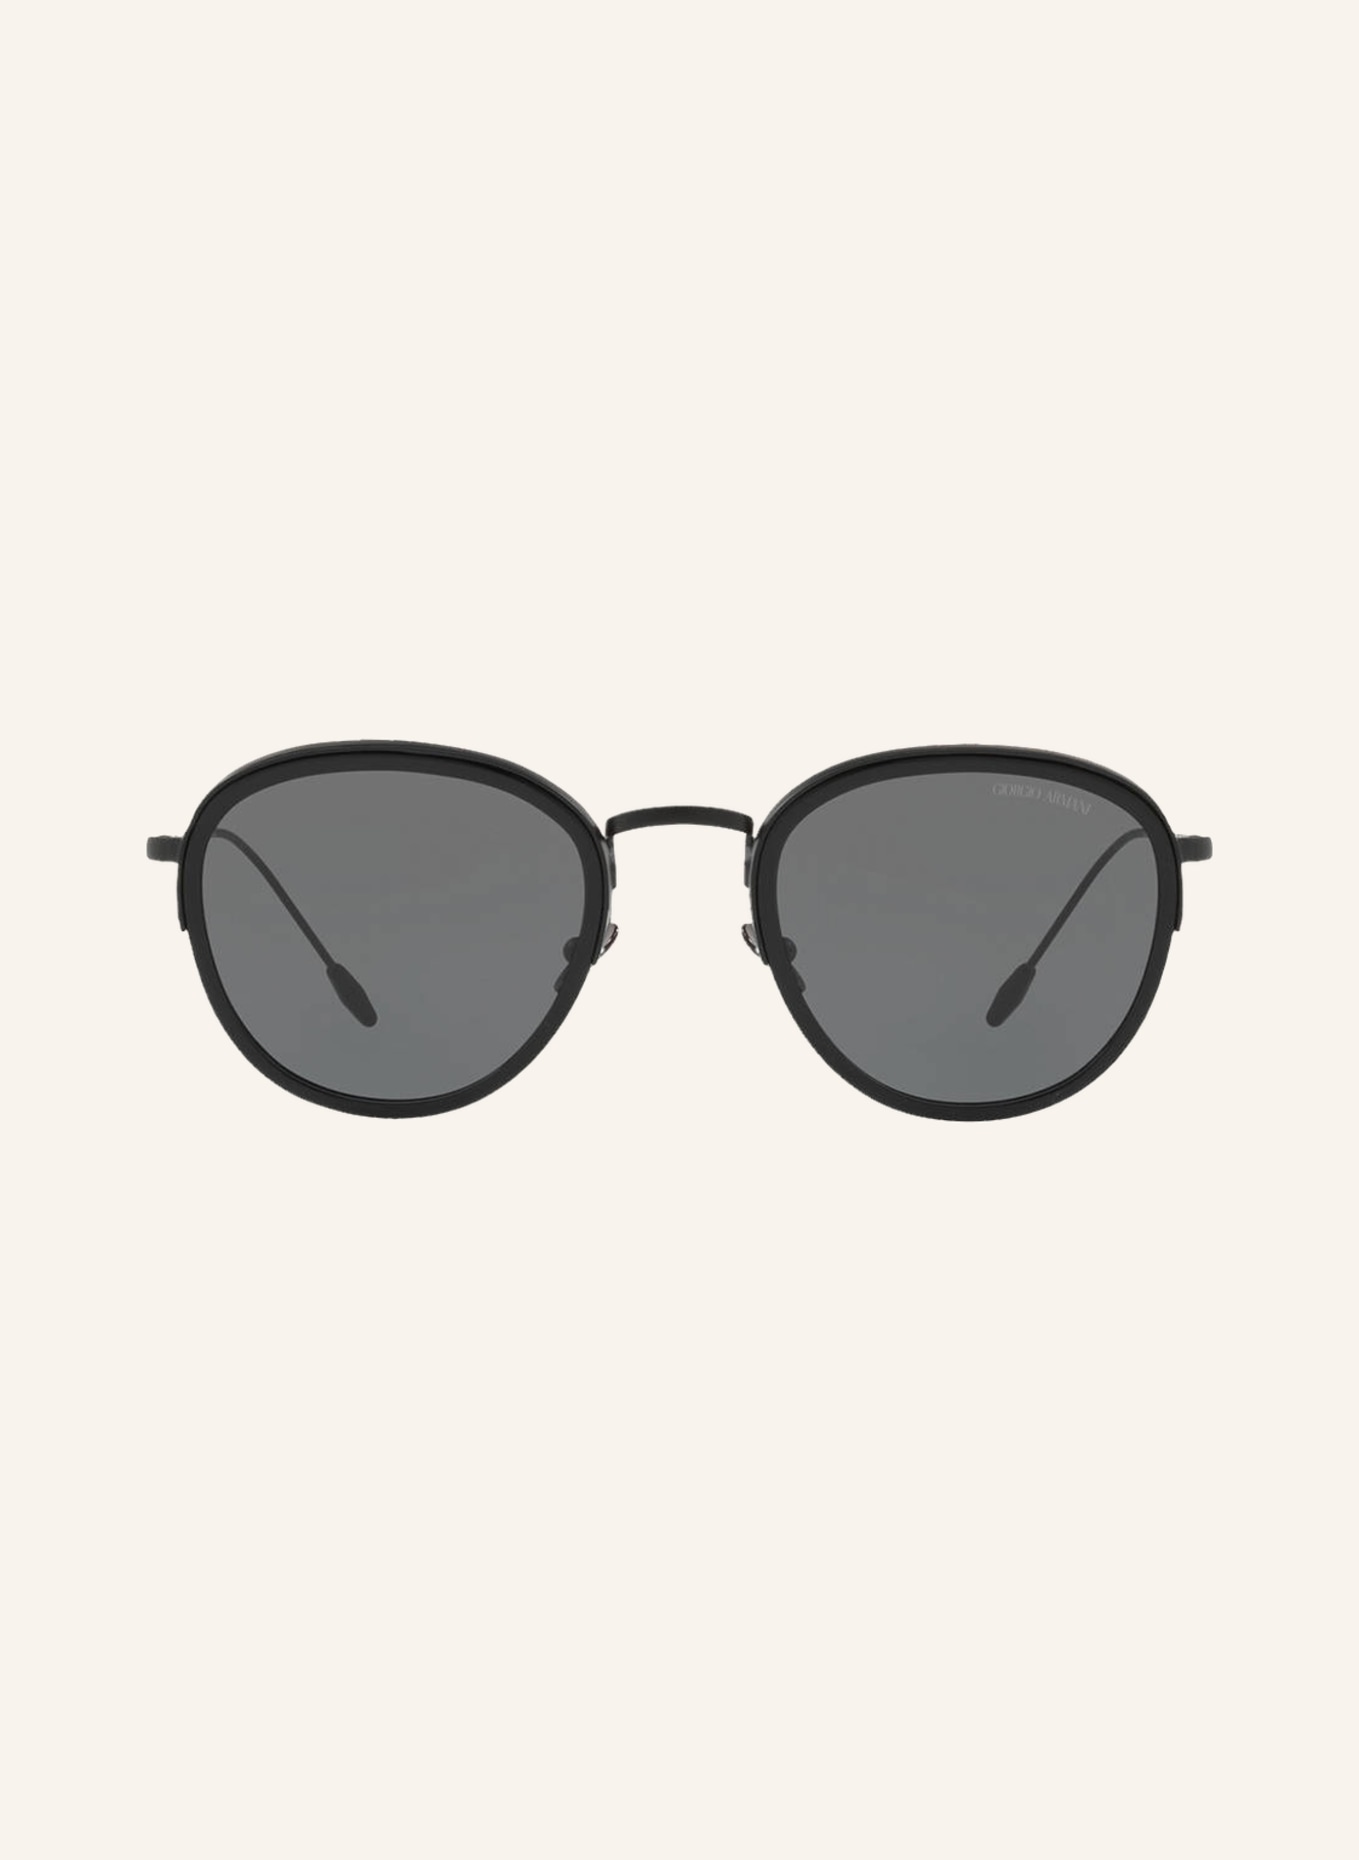 GIORGIO ARMANI Sunglasses AR6068, Color: 300187 - BLACK/DARK GRAY (Image 2)